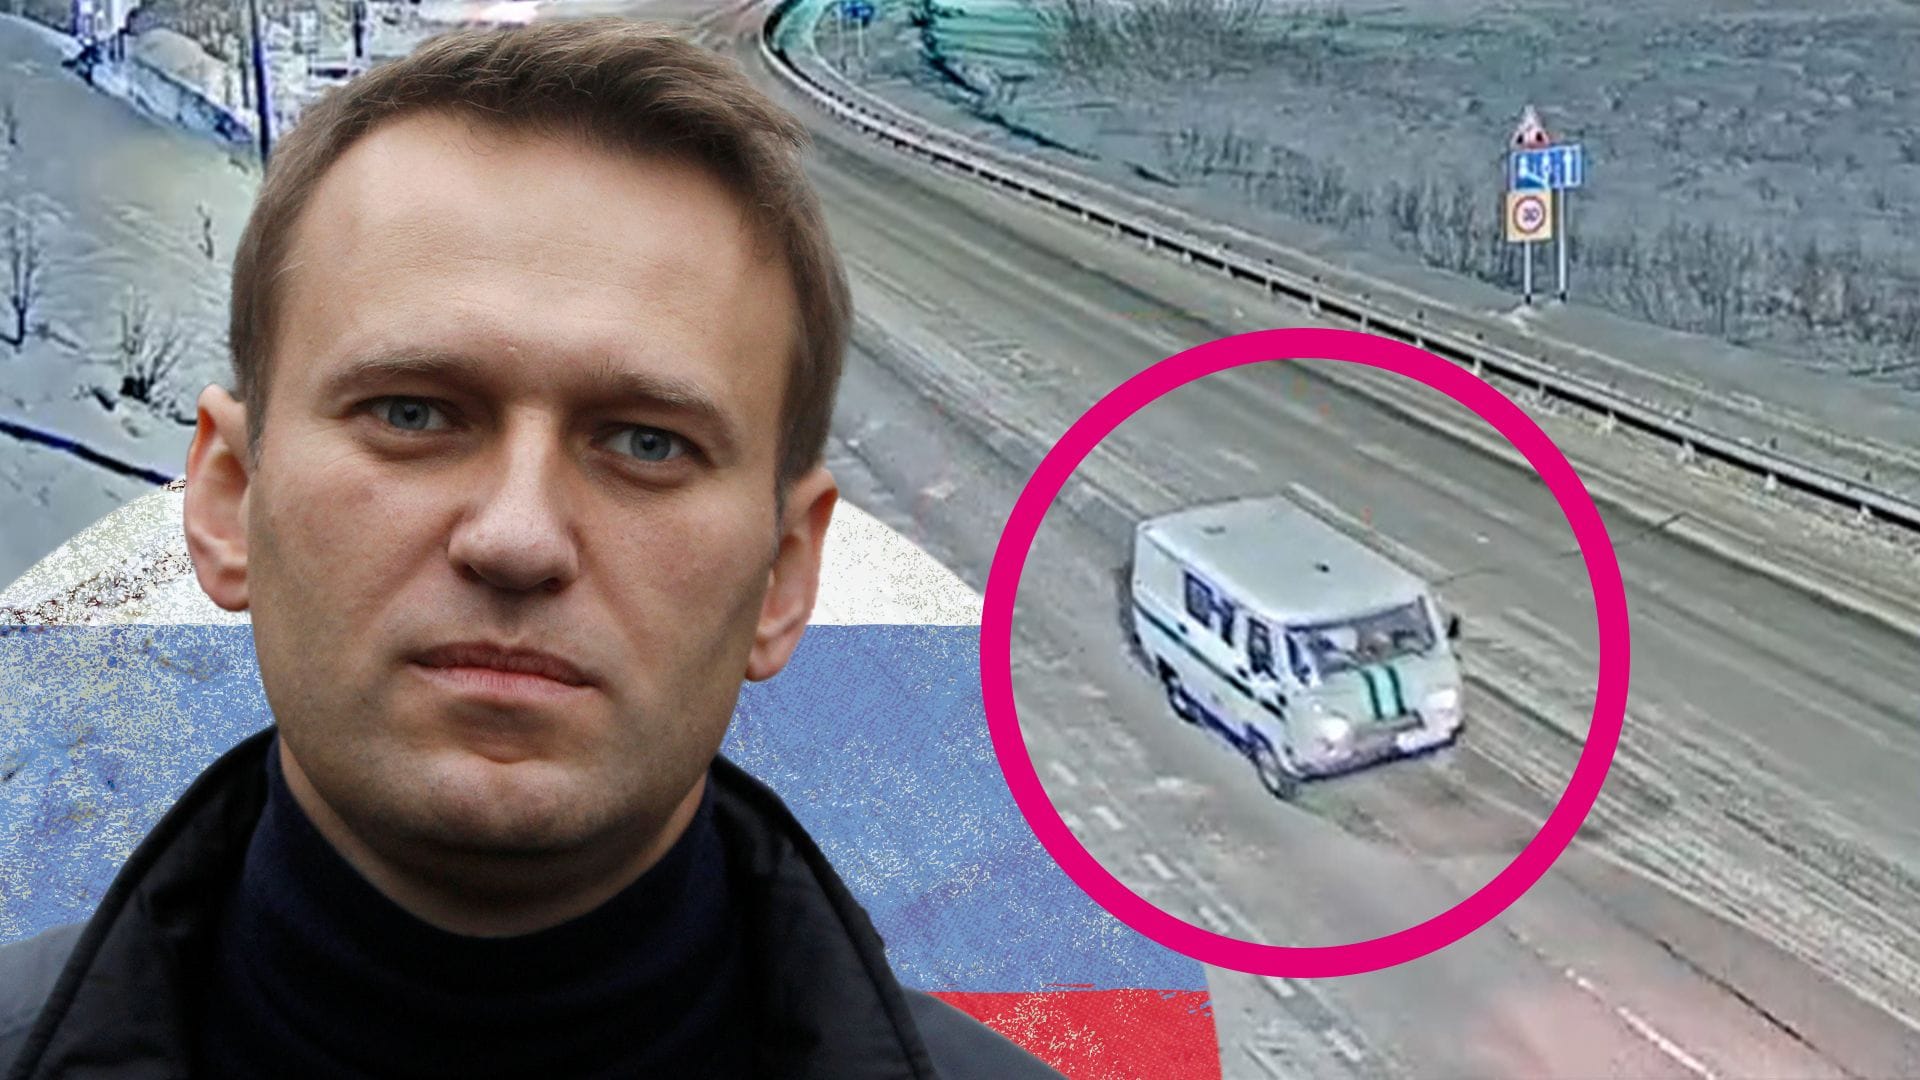 Russland: Video soll geheimen Transport der Leiche von Alexej Nawalny zeigen